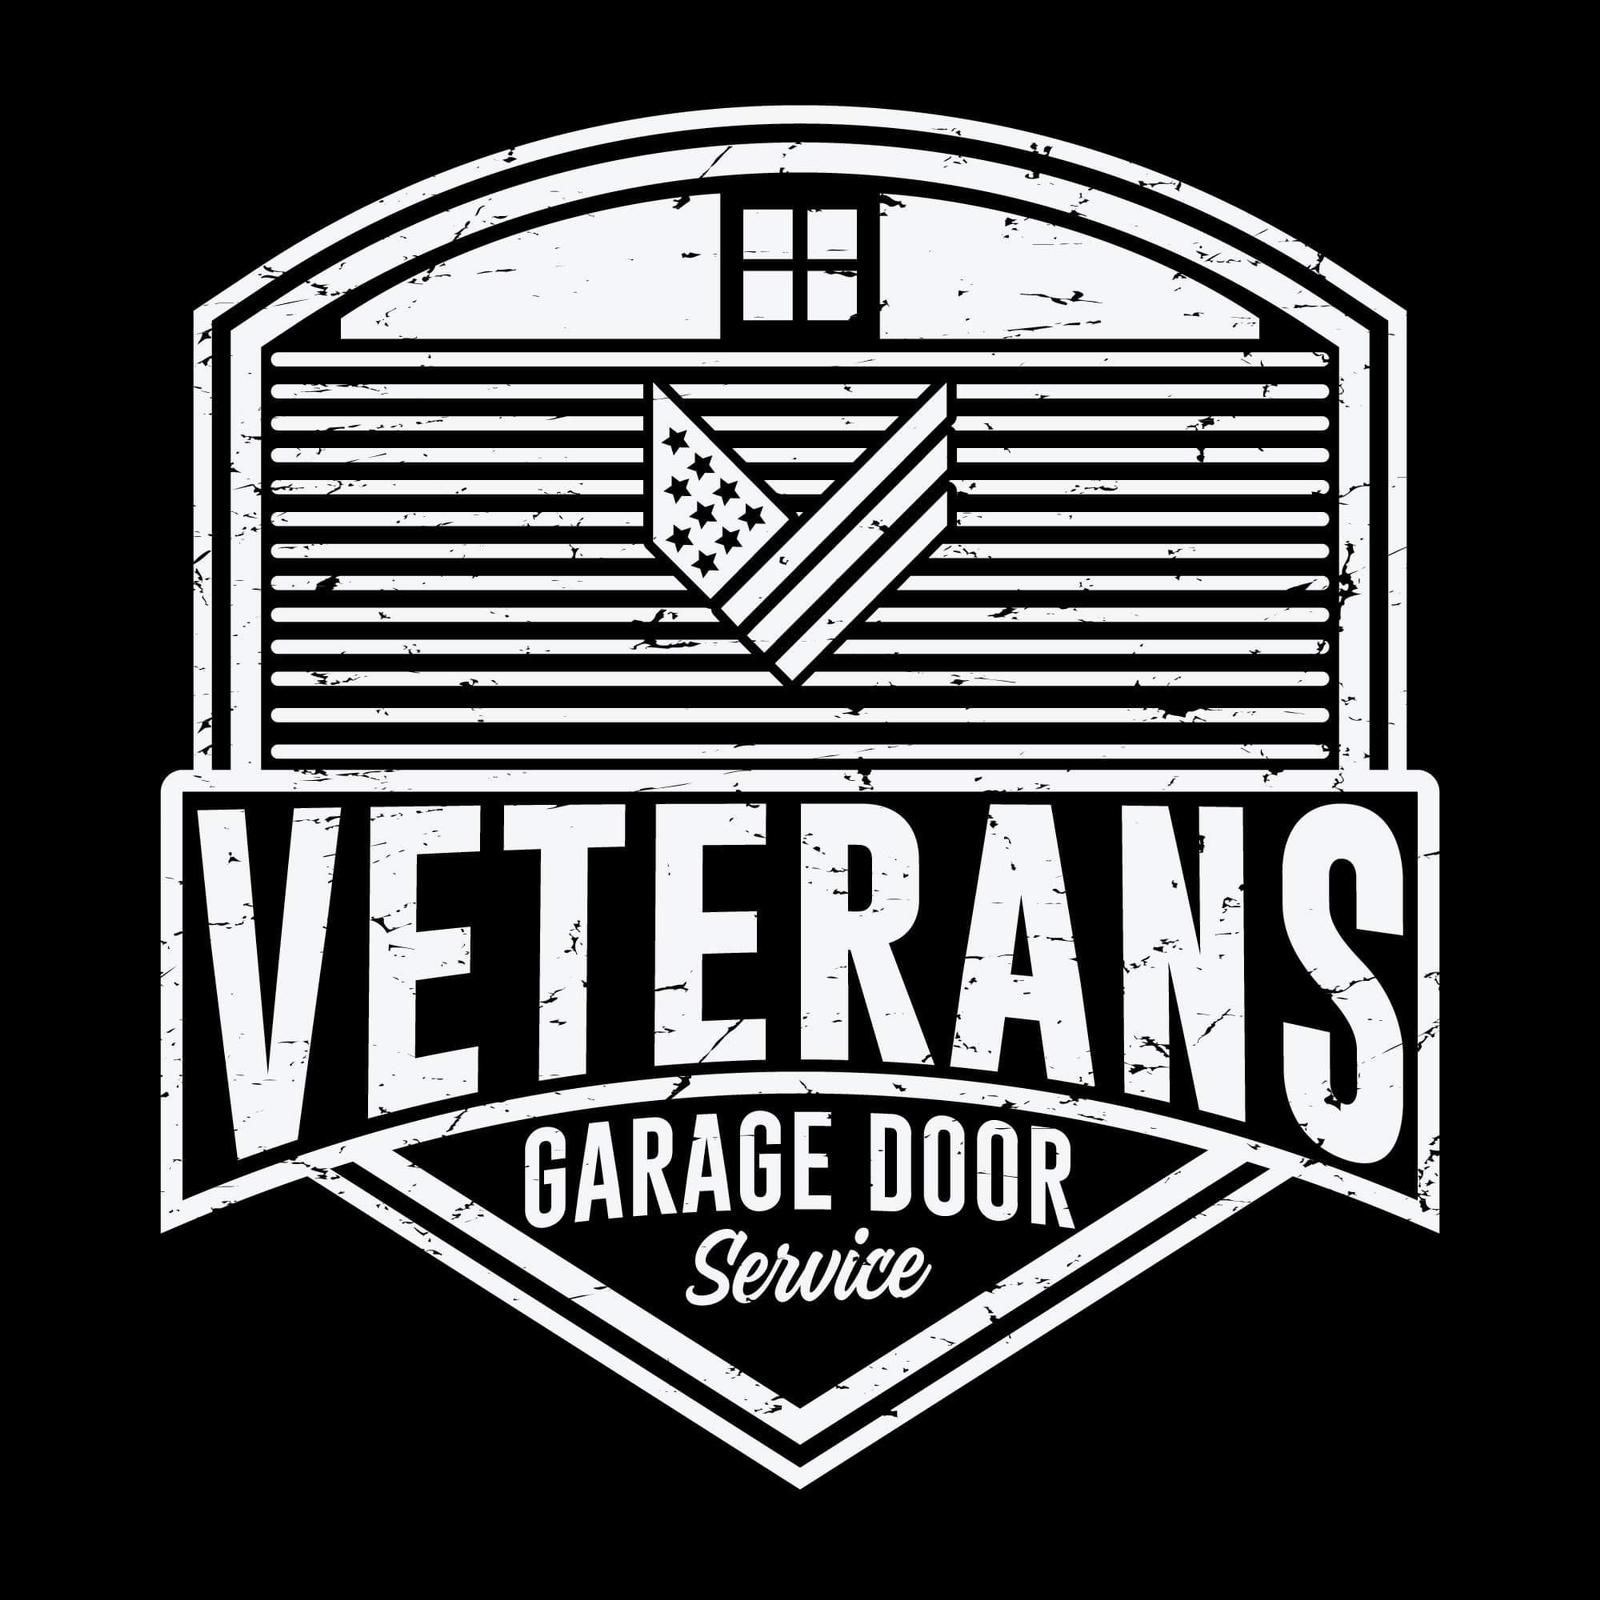 Business logo of Veterans Garage Door